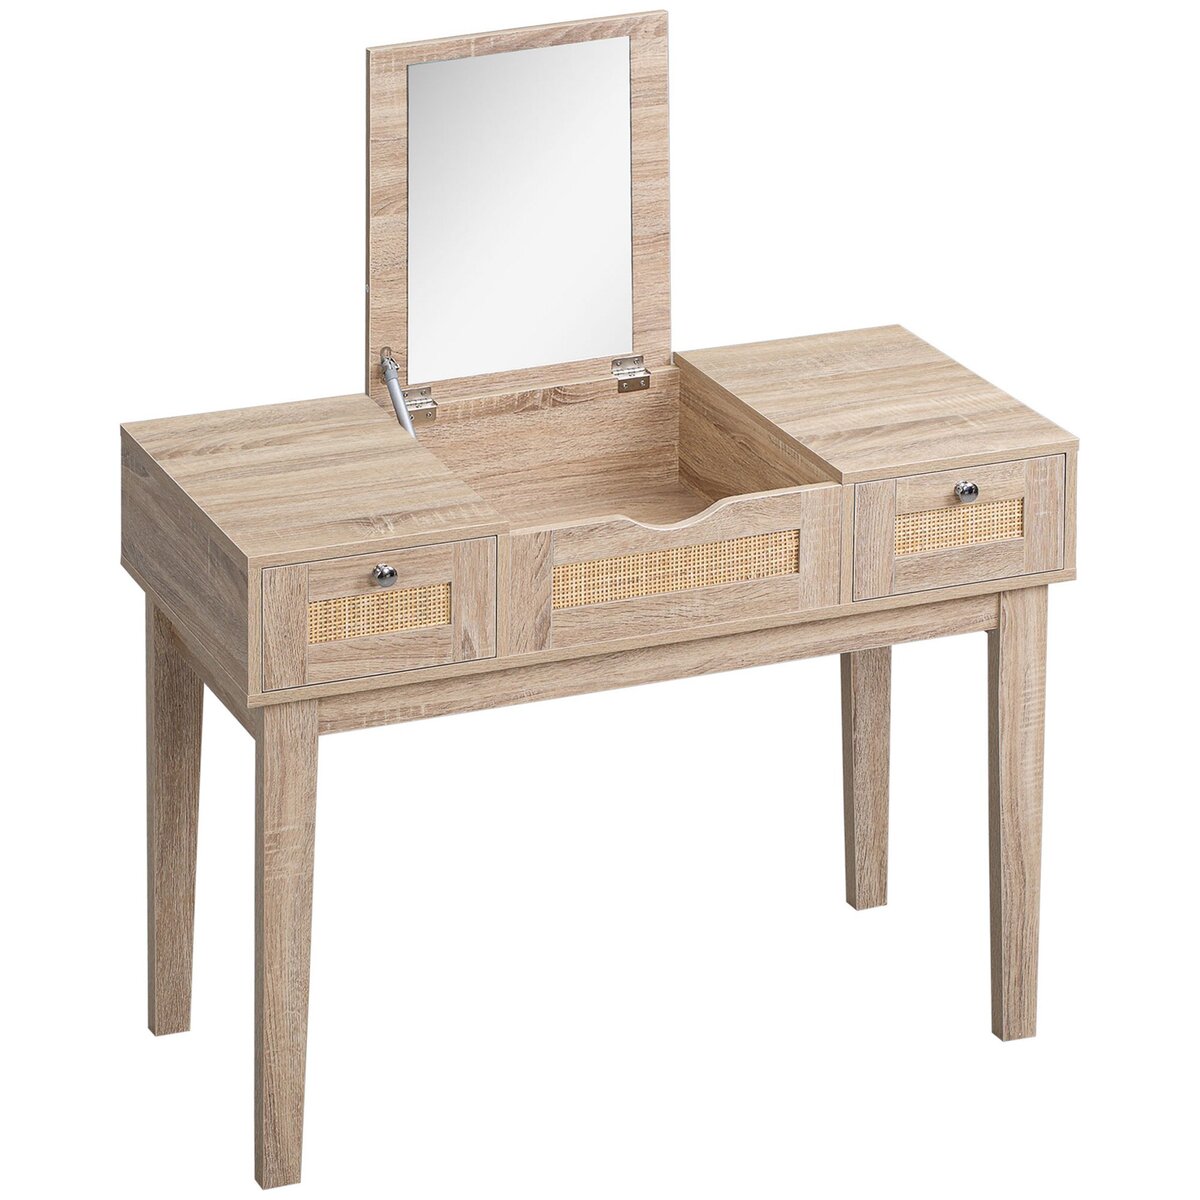 HOMCOM Coiffeuse style bohème chic - table de maquillage - 2 tiroirs, compartiment porte miroir - cannage en rotin panneaux aspect chêne clair